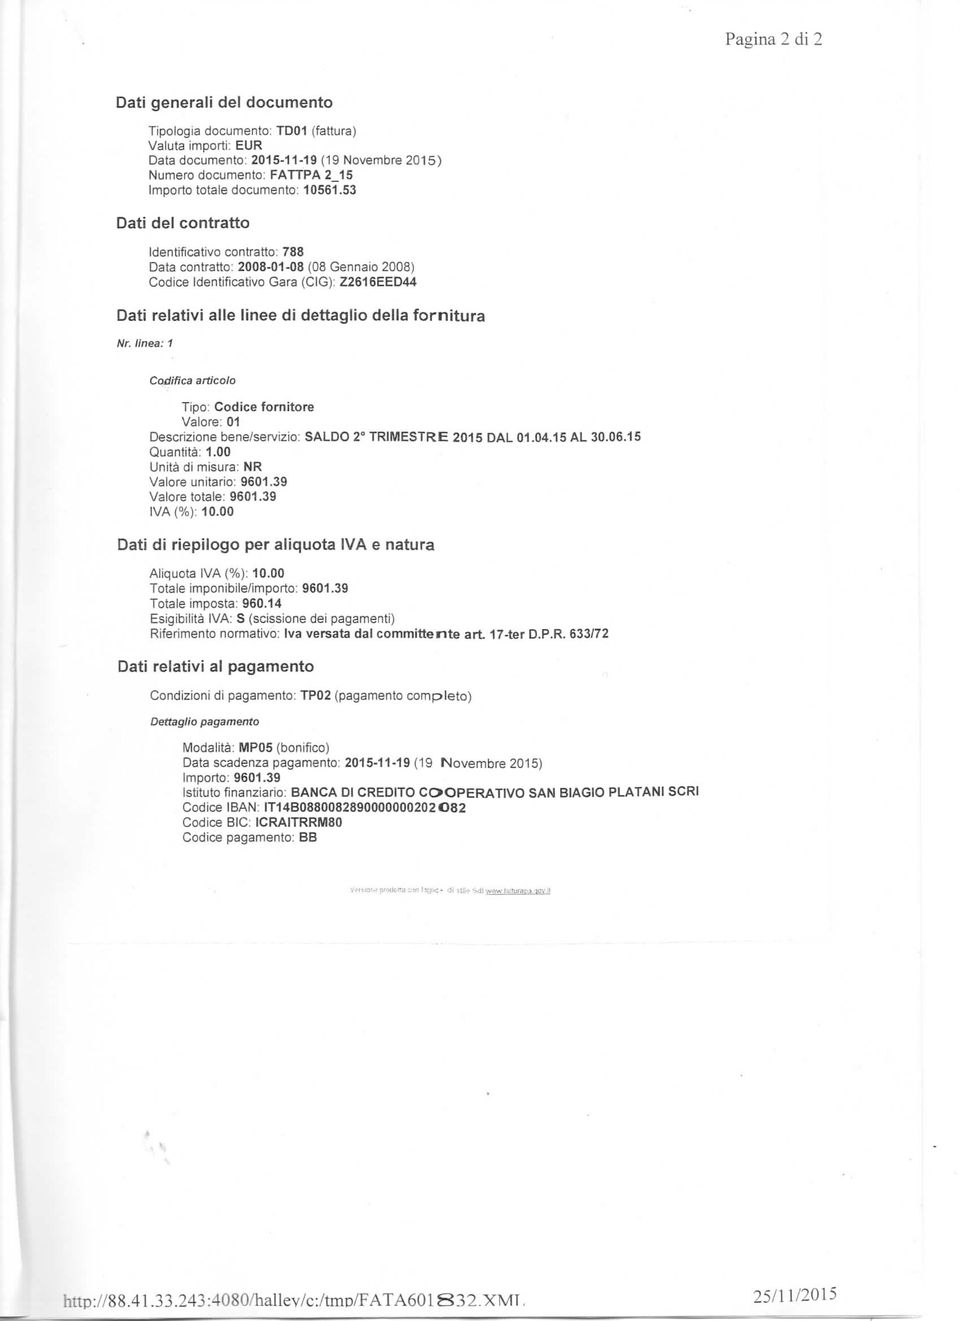 53 Dati del contratto Identificativo contratto: 788 Data contratto: 2008-01-08 (08 Gennaio 2008) Codice Identificativo Gara (CIG): Z2616EED44 Dati relativi alle linee di dettaglio della fornitura Nr.